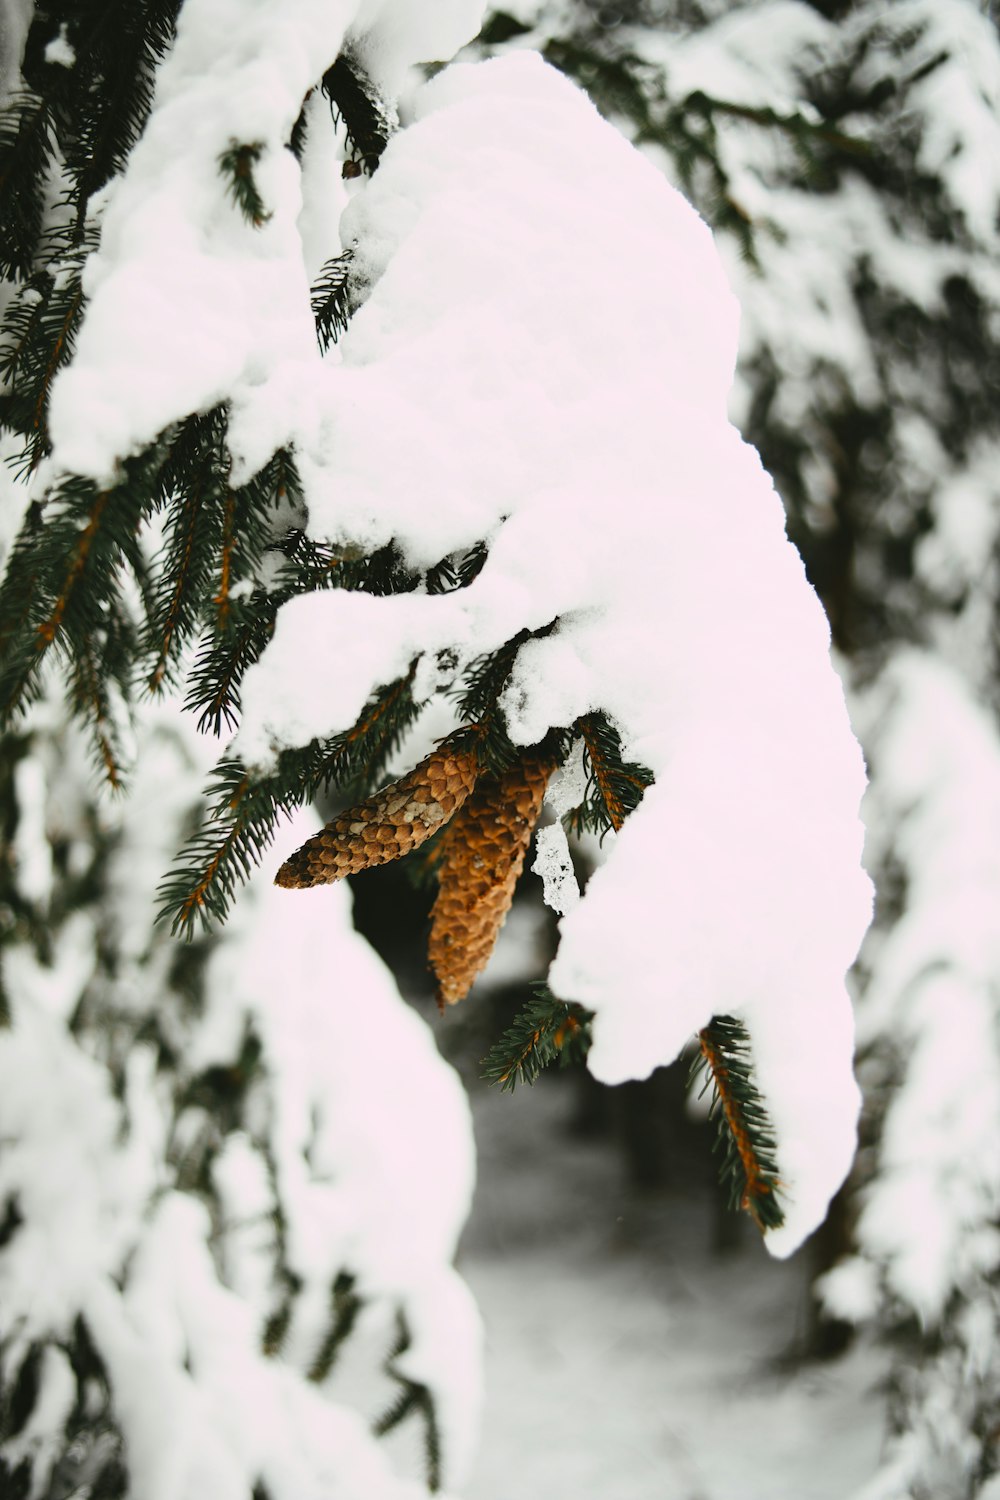 pájaro marrón y negro volando sobre un árbol cubierto de nieve durante el día